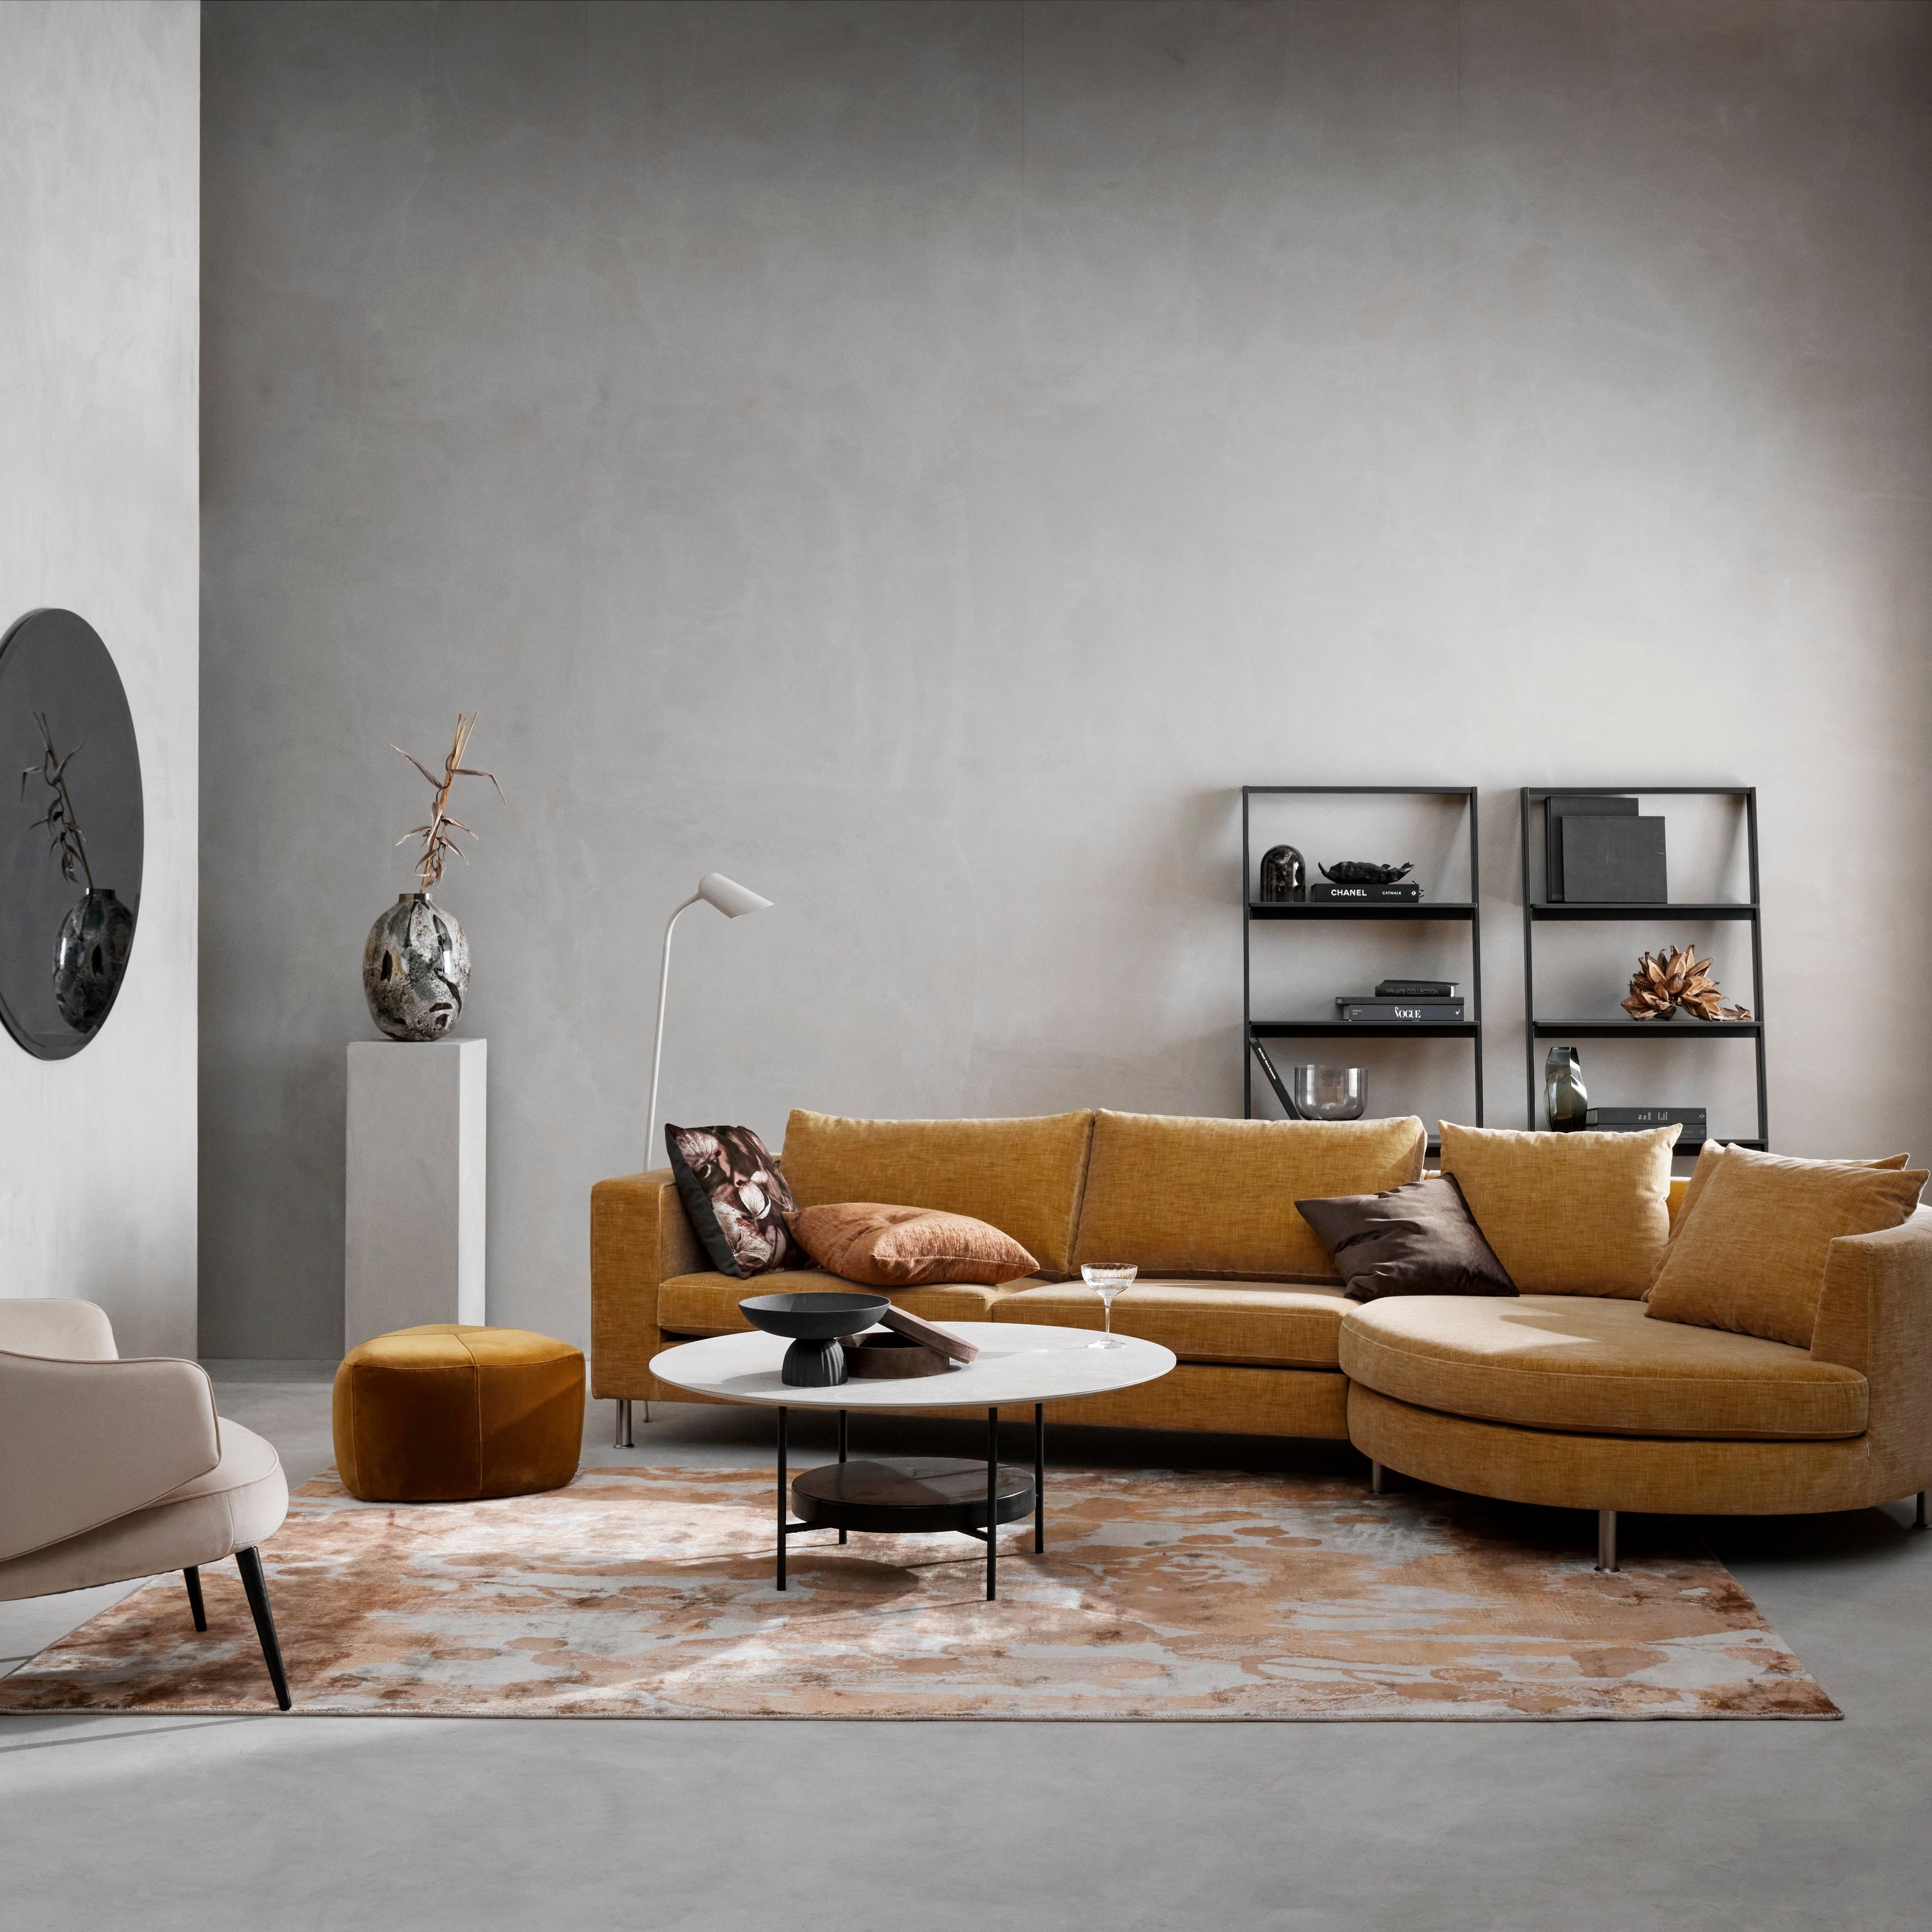 Salon moderne avec un canapé modulable moutarde, un fauteuil beige, un tapis à motifs et une décoration minimaliste.